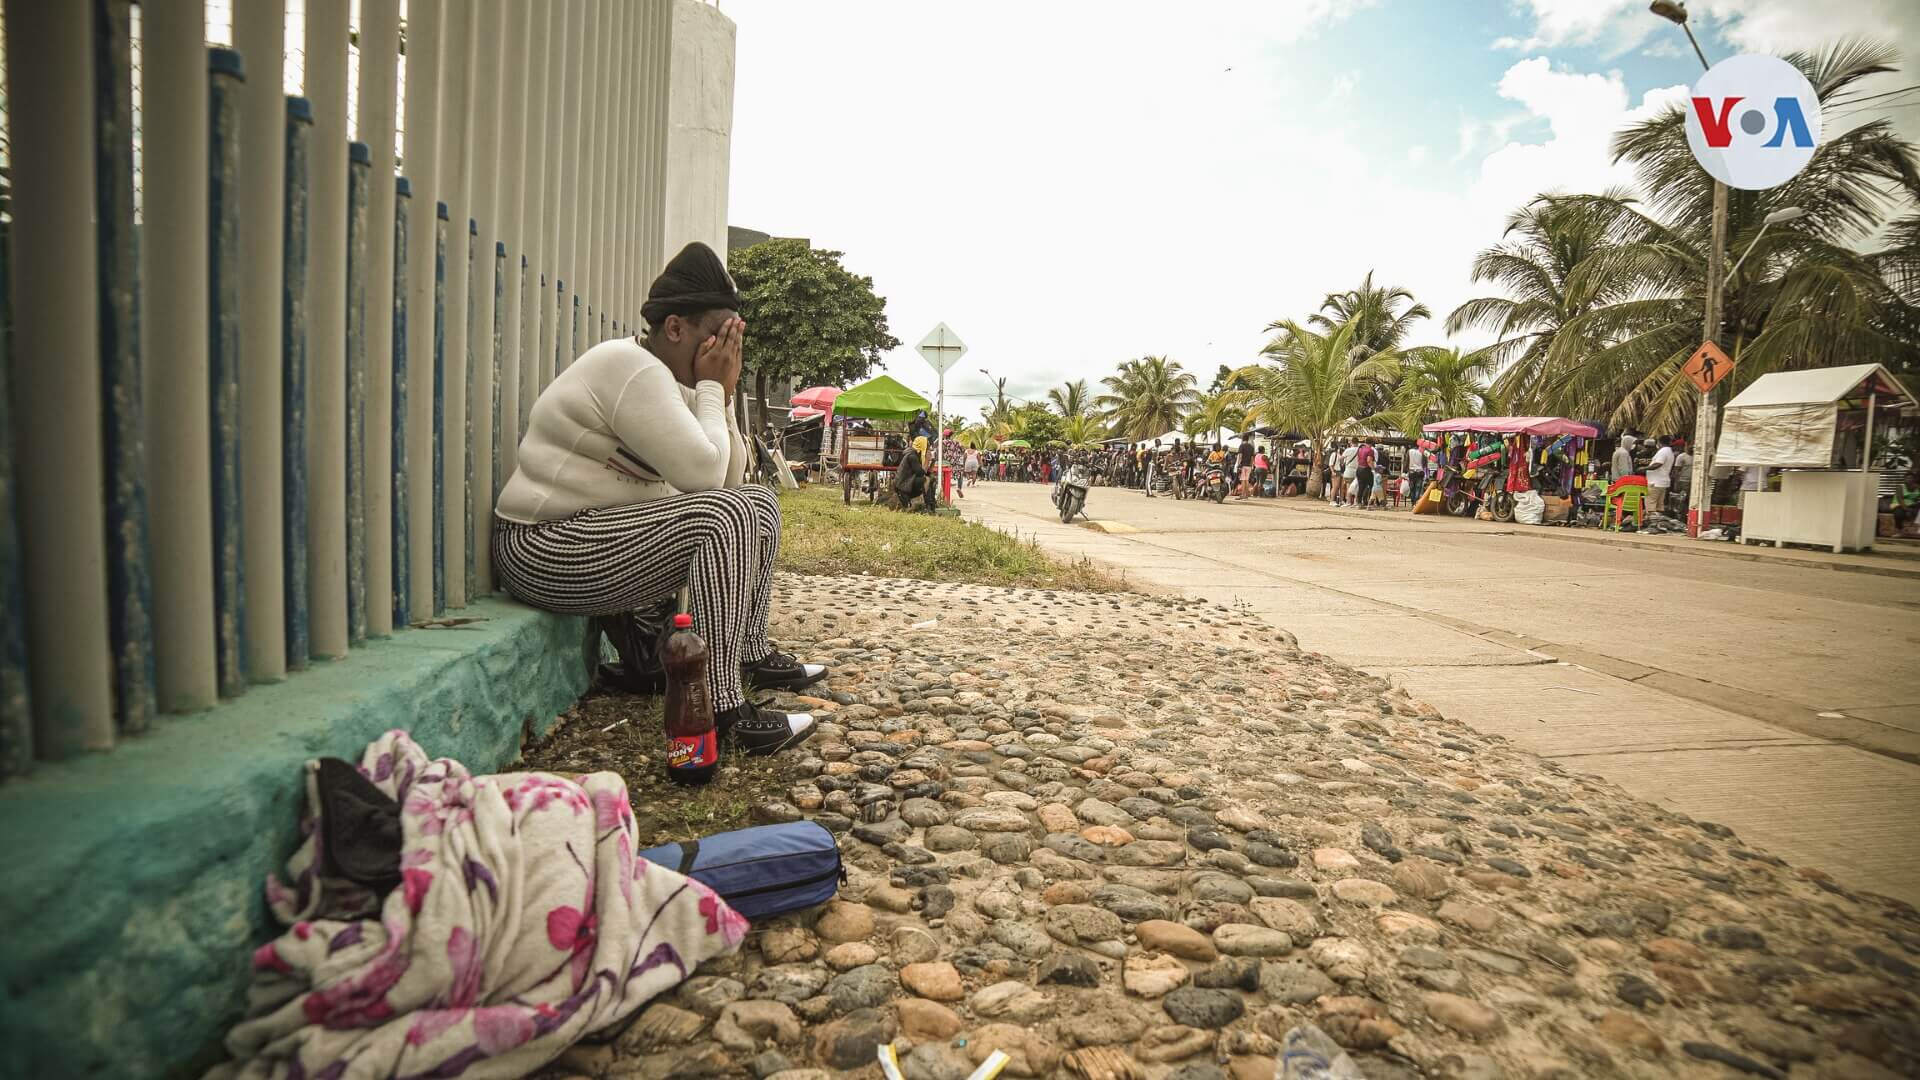 La desolación y angustia se apodera de los migrantes al enfrentarse con las duras condiciones para llegar a Necoclí, paso obligatorio para llegar a Centroamérica.